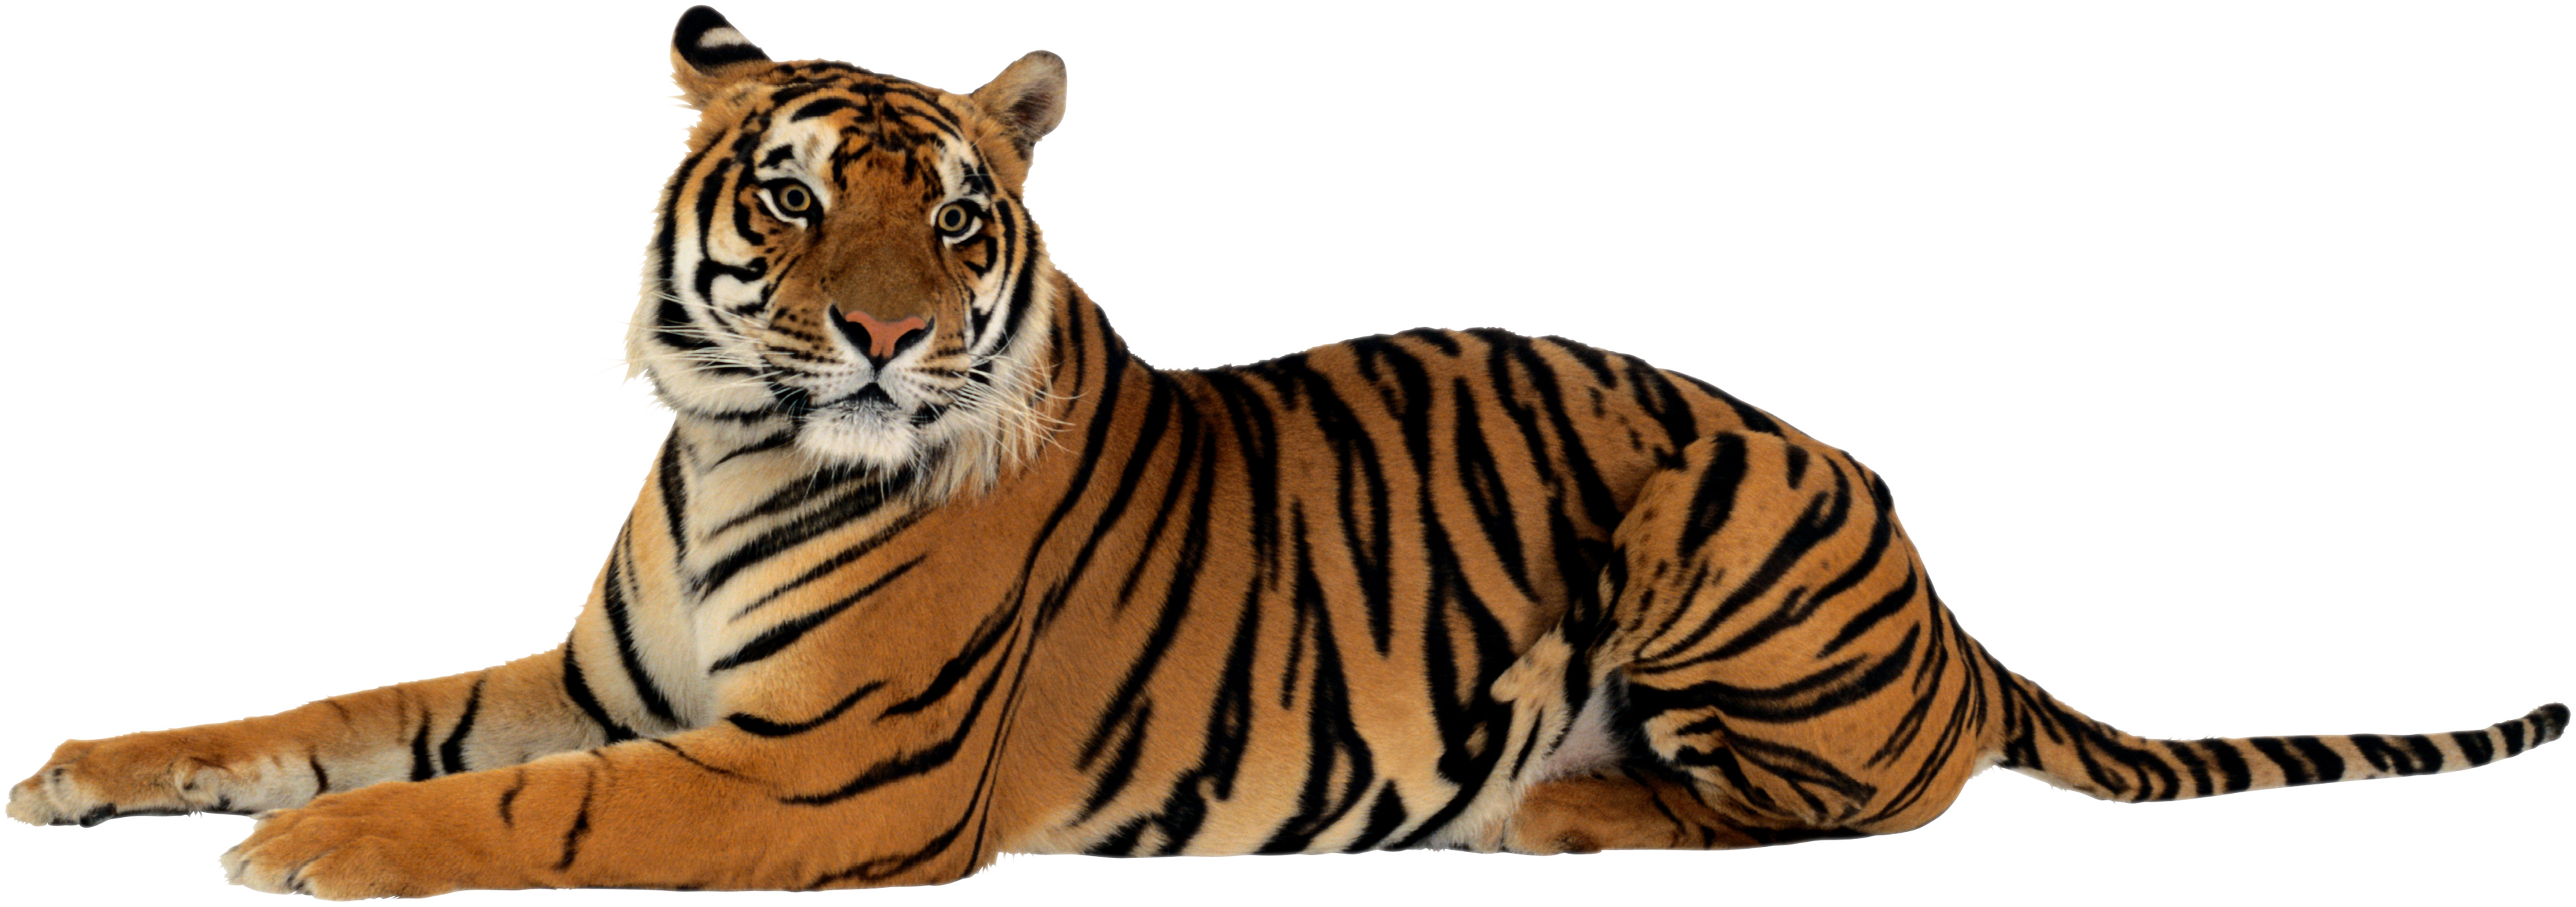 Tiger Transparent Background